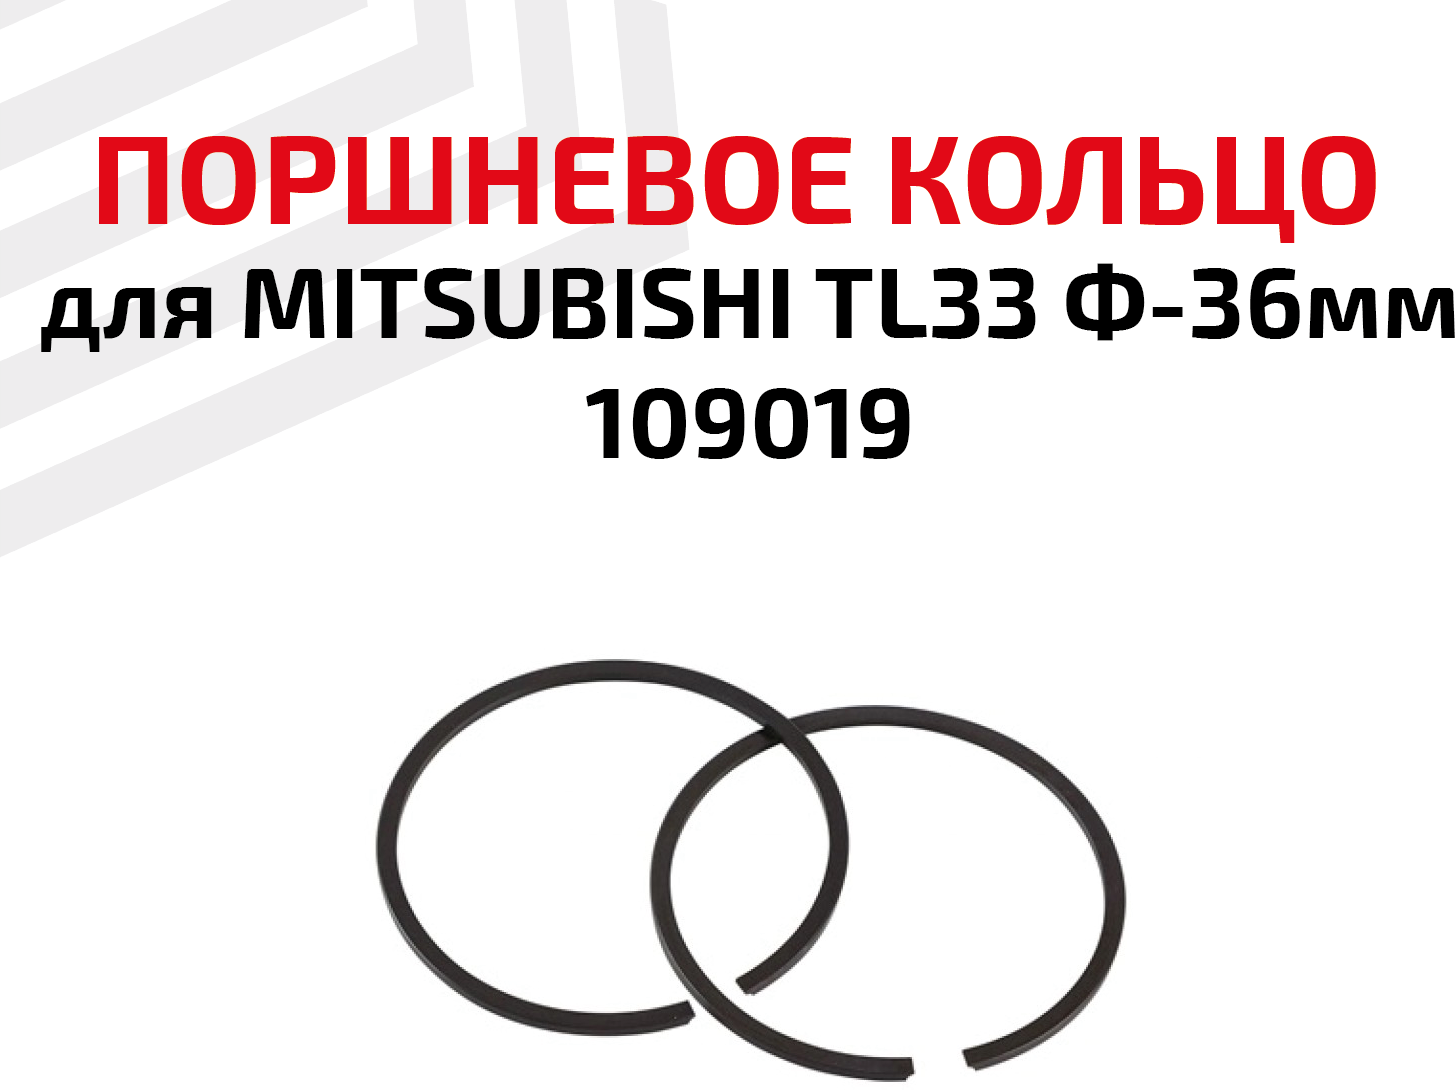 Кольцо поршневое для бензоинструмента Mitsubishi TL33 Ф-36мм 109019